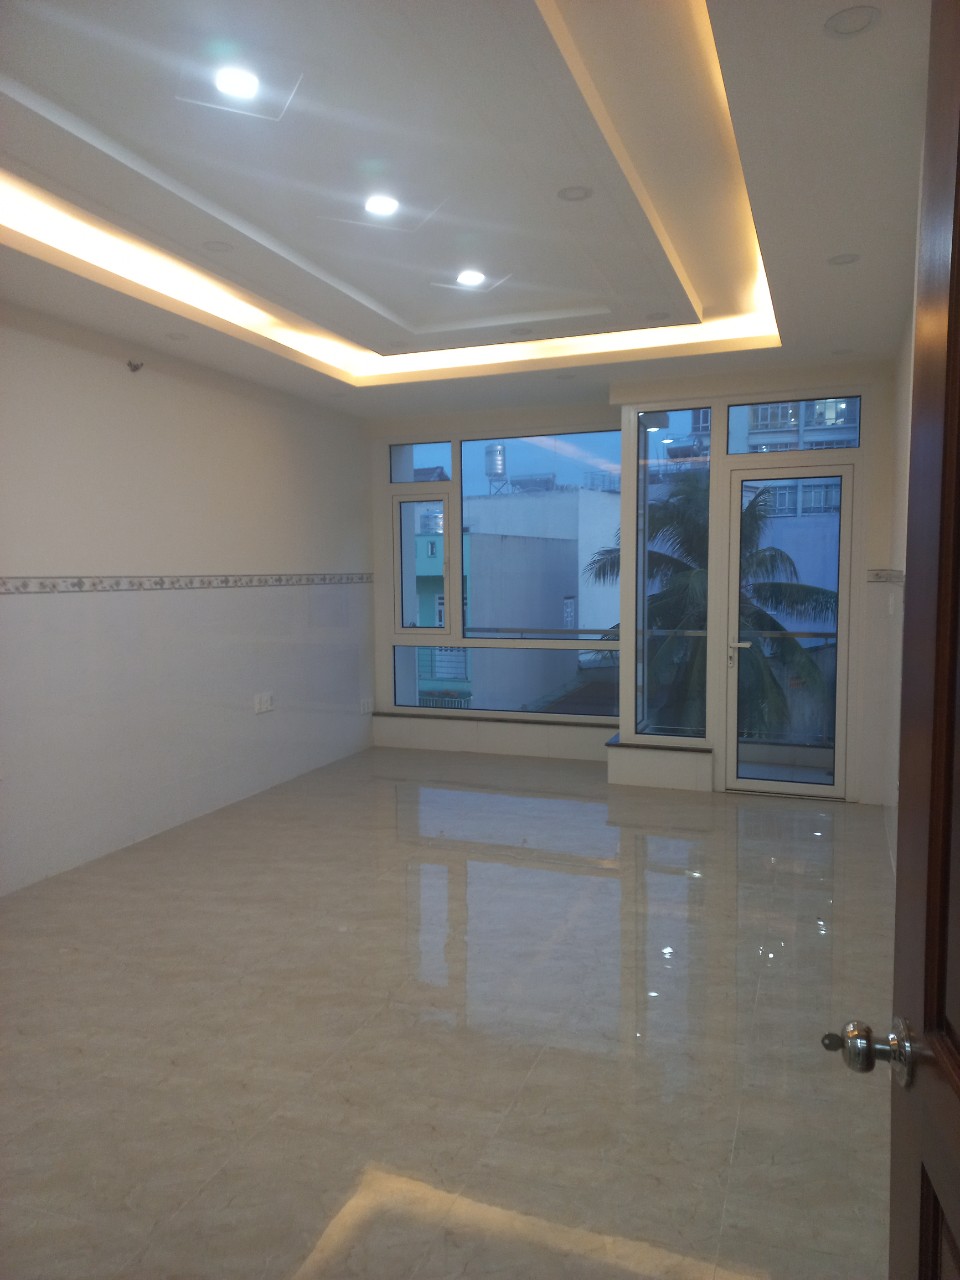 Bán gấp nhà mặt tiền Tạ Quang Bửu, Nhà mới đẹp, kinh doanh buôn bán sầm uất, giá rẻ 13.5 tỷ, LH: 0934.933.978